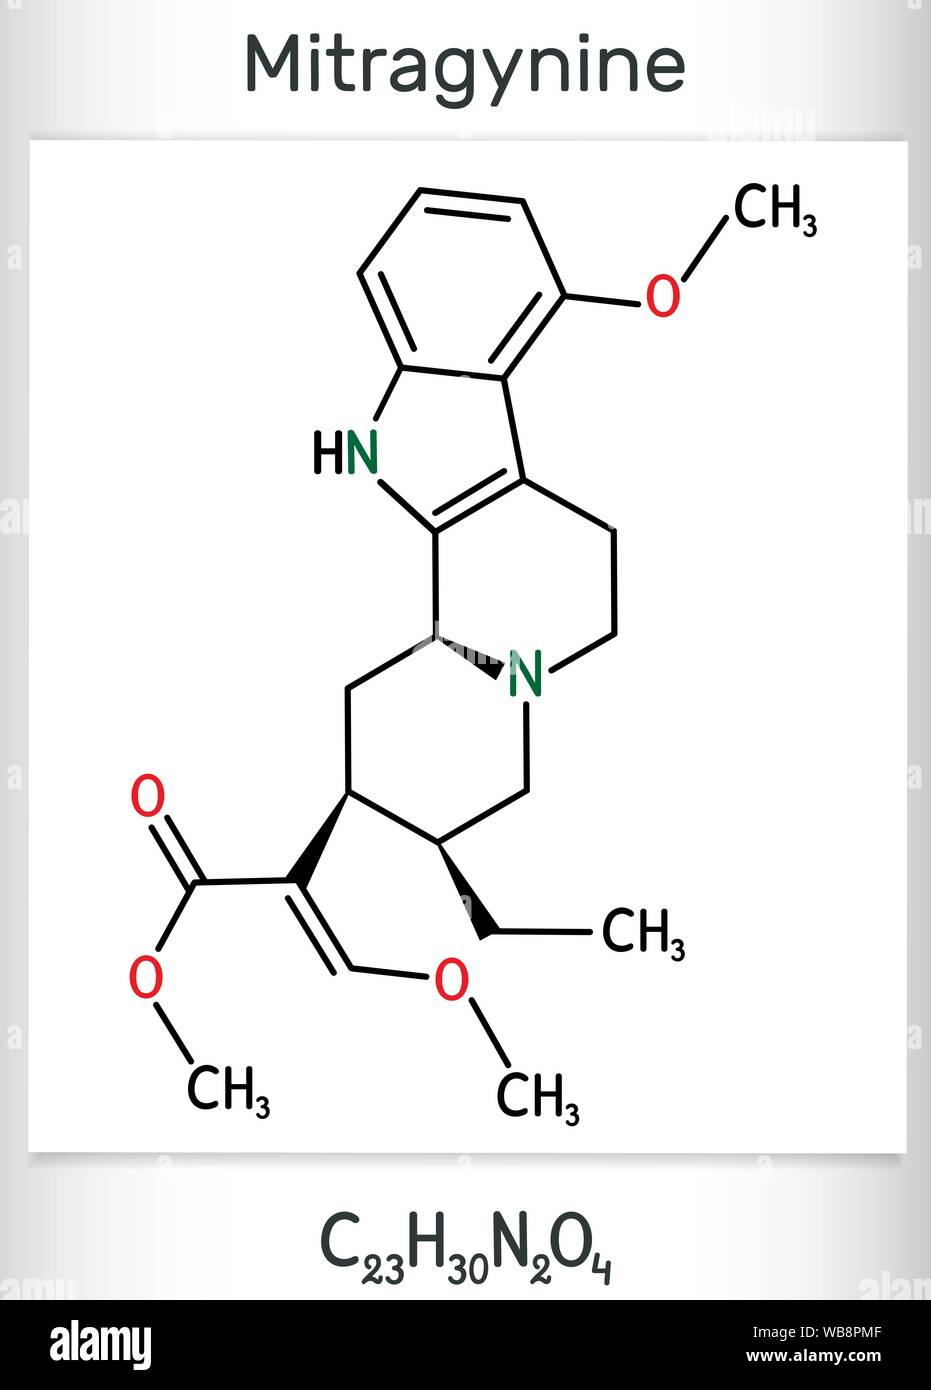 Mitragynin Molekül. Es ist die pflanzliche Alkaloide mit opiaten wie Eigenschaften produziert durch die Pflanze Mitragyna speciosa Korth, Kratom. Strukturelle chemische fo Stock Vektor